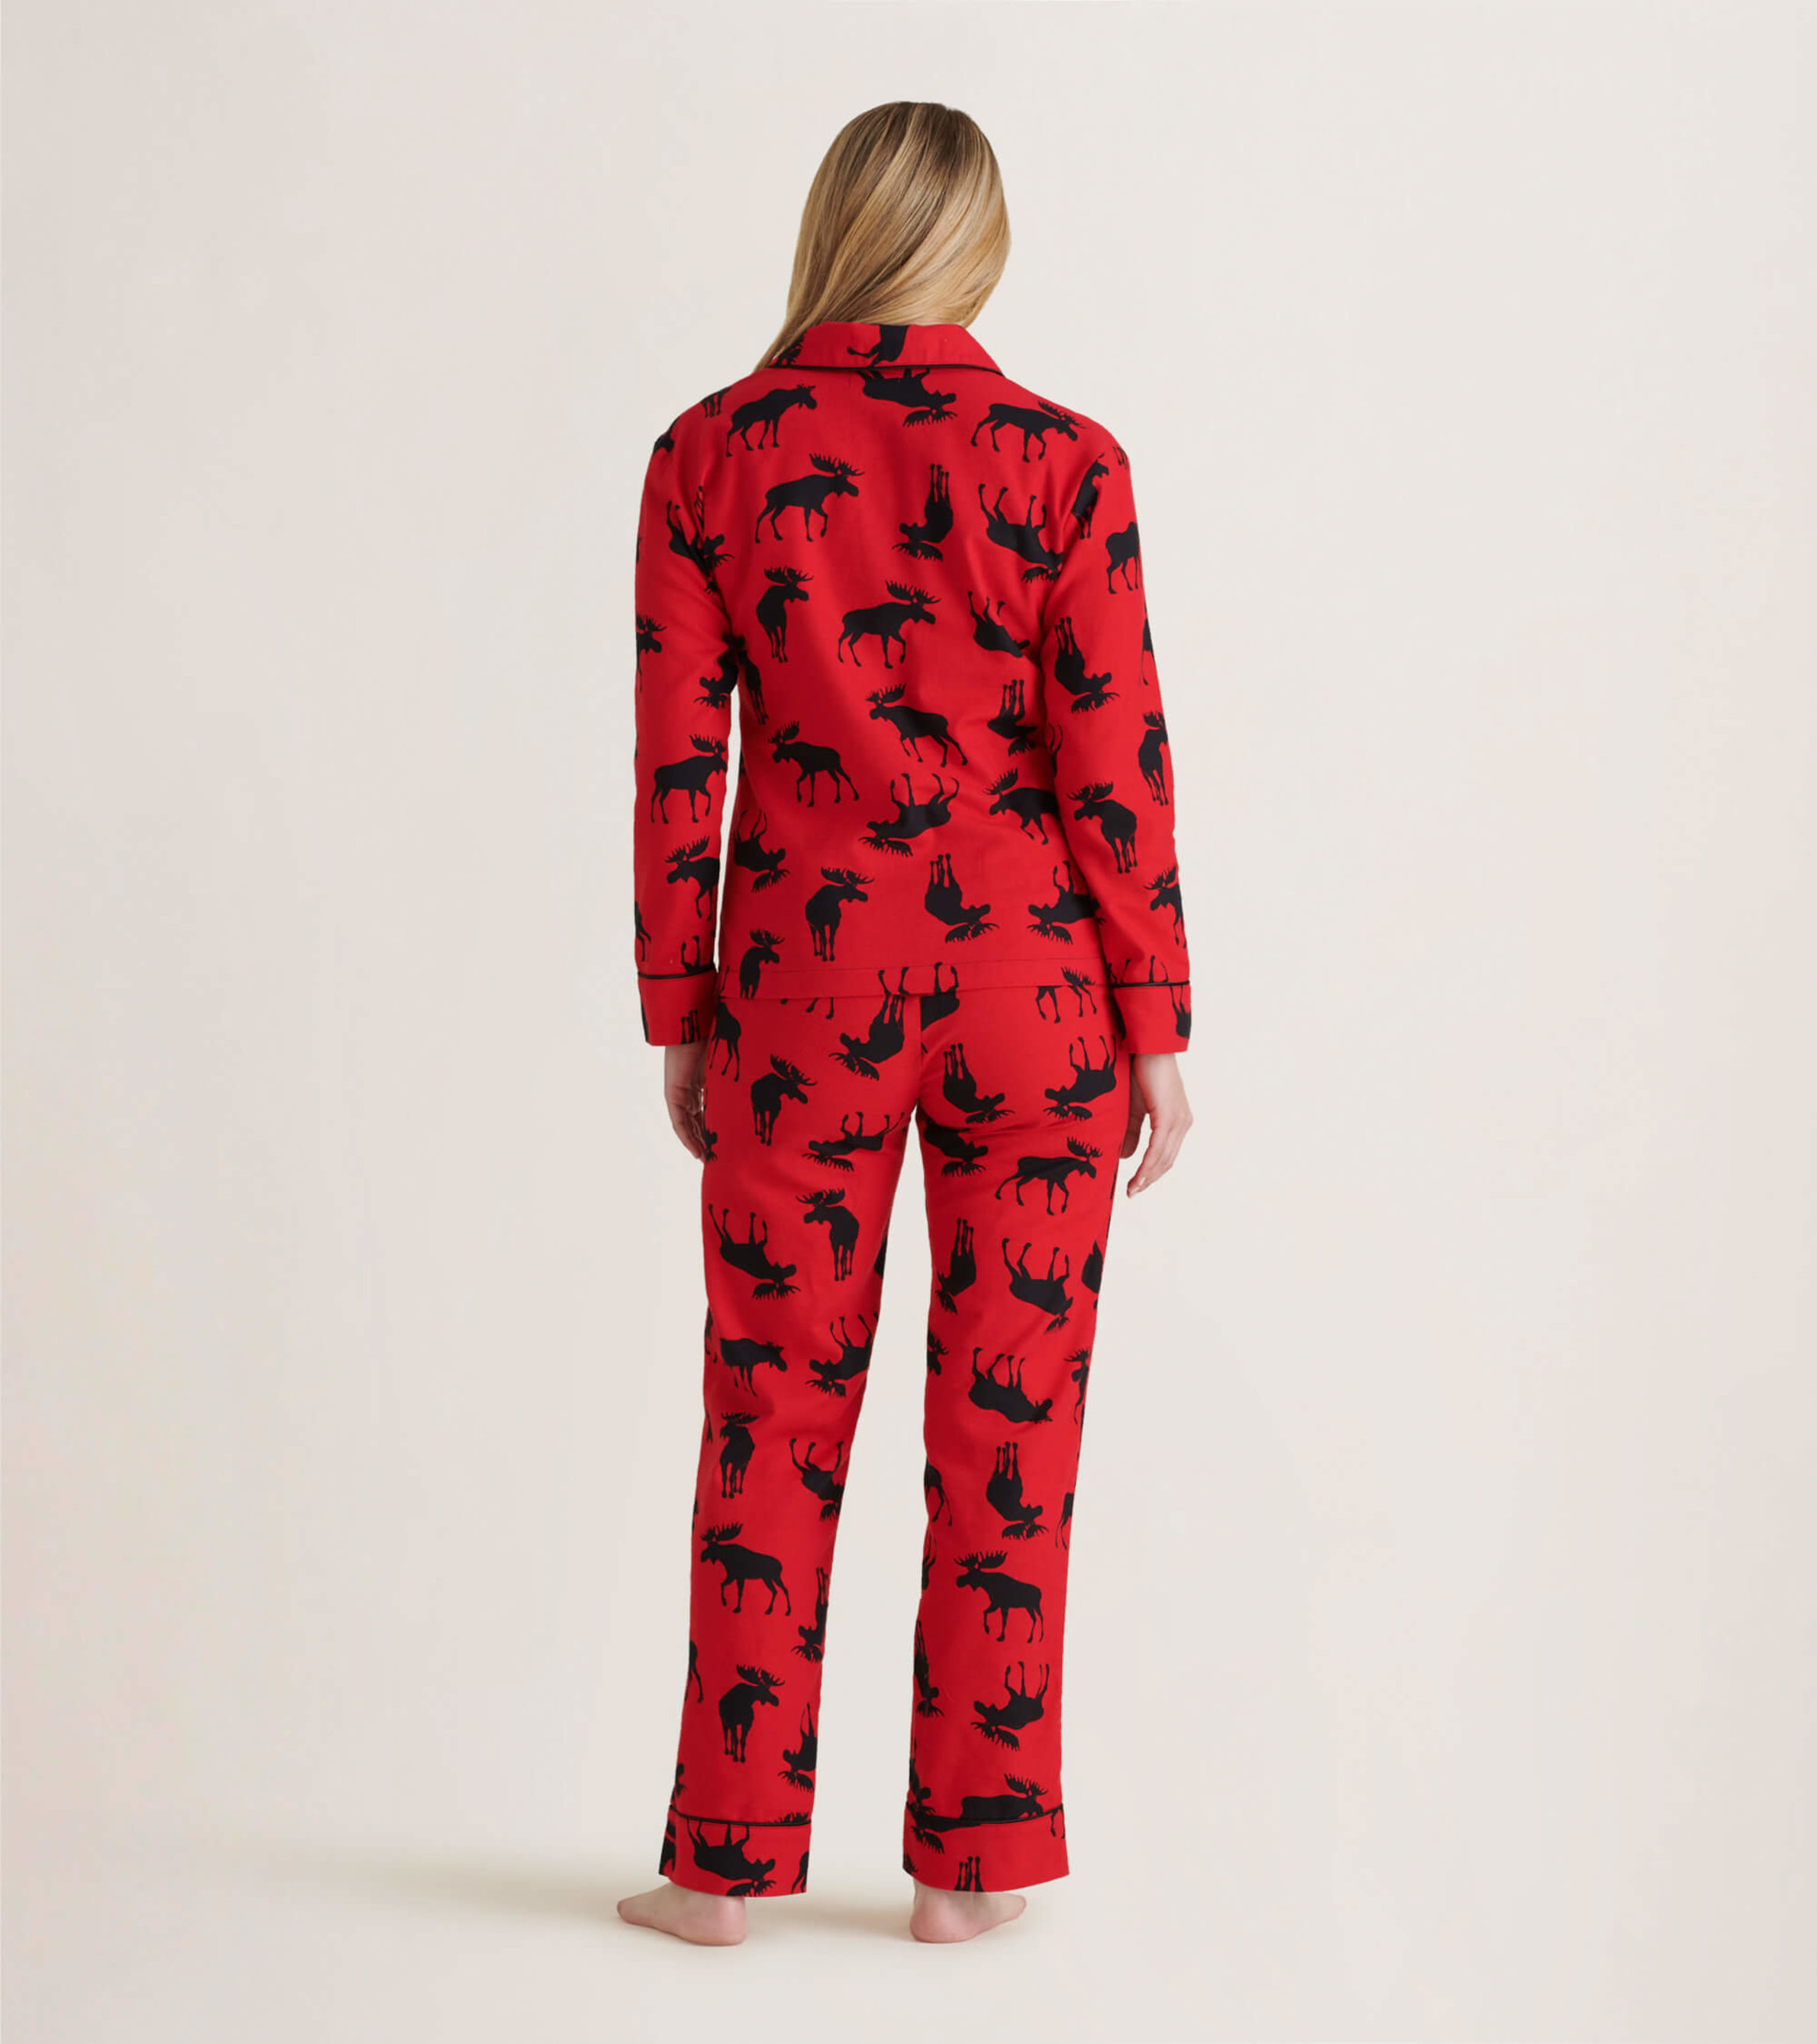 Buy Red Plaid Pajama - Shoptery  Pajamas women, Pajama set women, Cozy  fashion